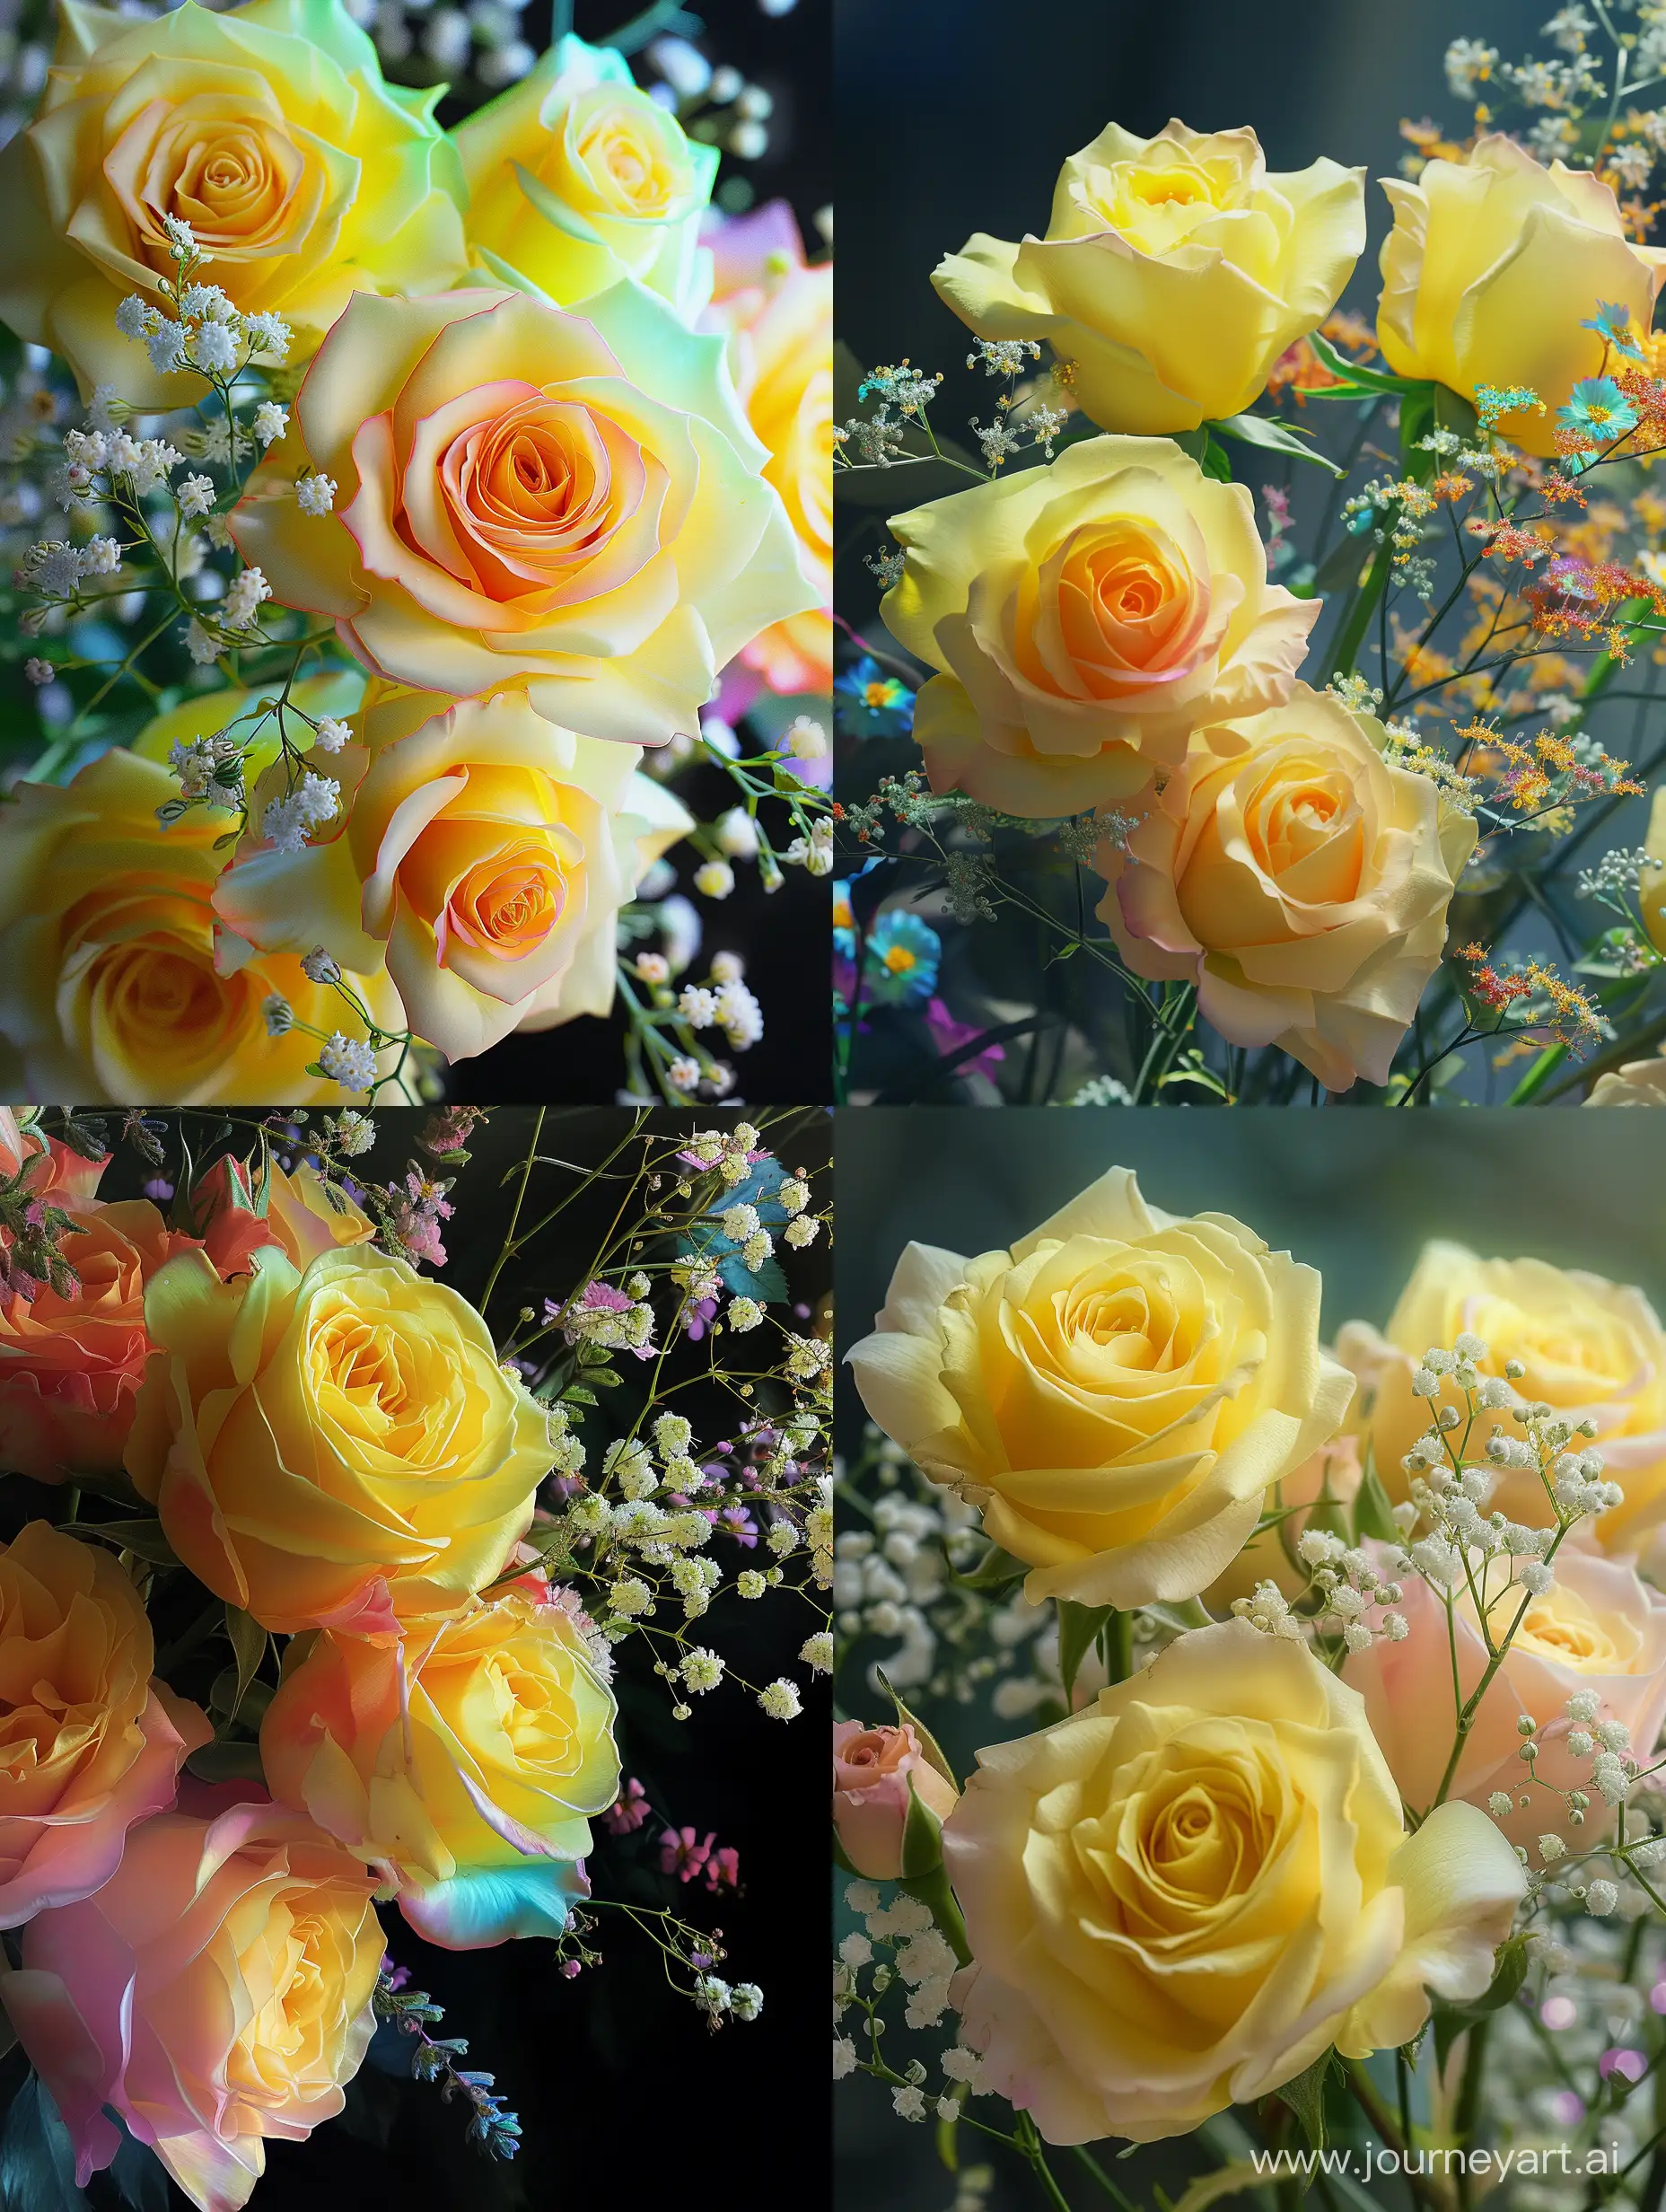 Букет лимонно-жёлтых роз,веточки радужной гипсофилы,крупный план,botanical art,высокохудожественная цифровая живопись, эстетично, красиво, lumen,профессиональное фото,высокая детализация, яркое освещение